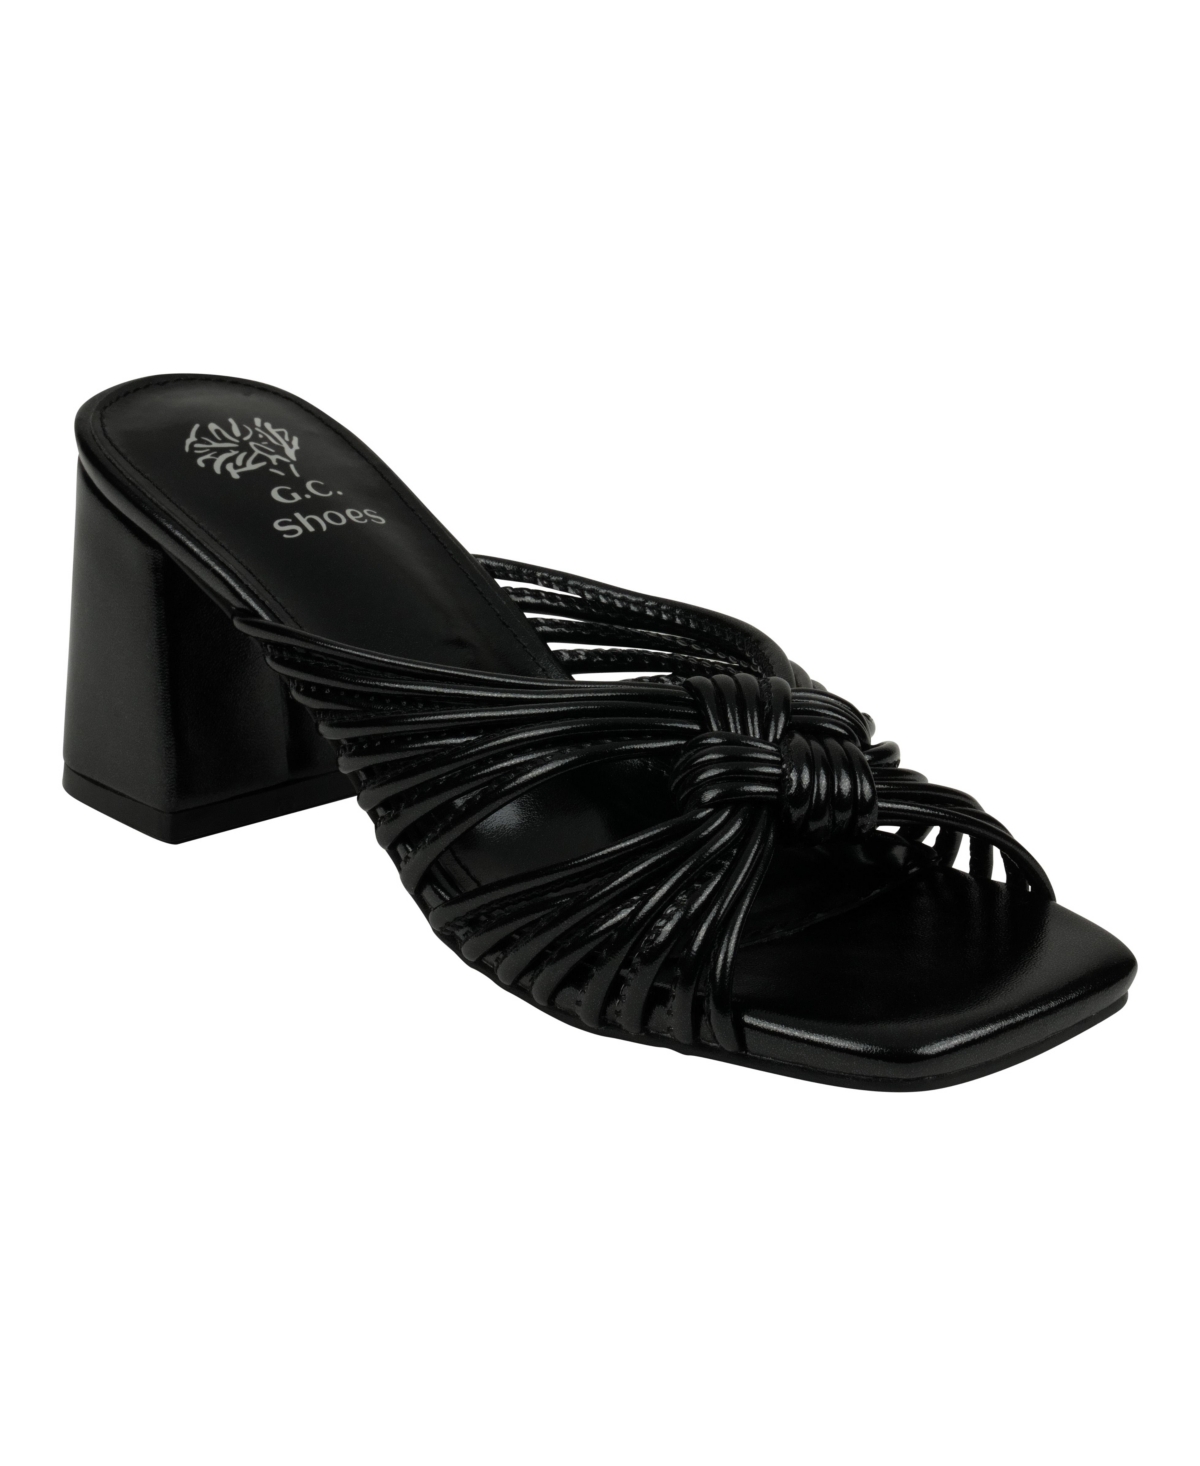 Josie Women's Strappy Heeled Sandals - Black